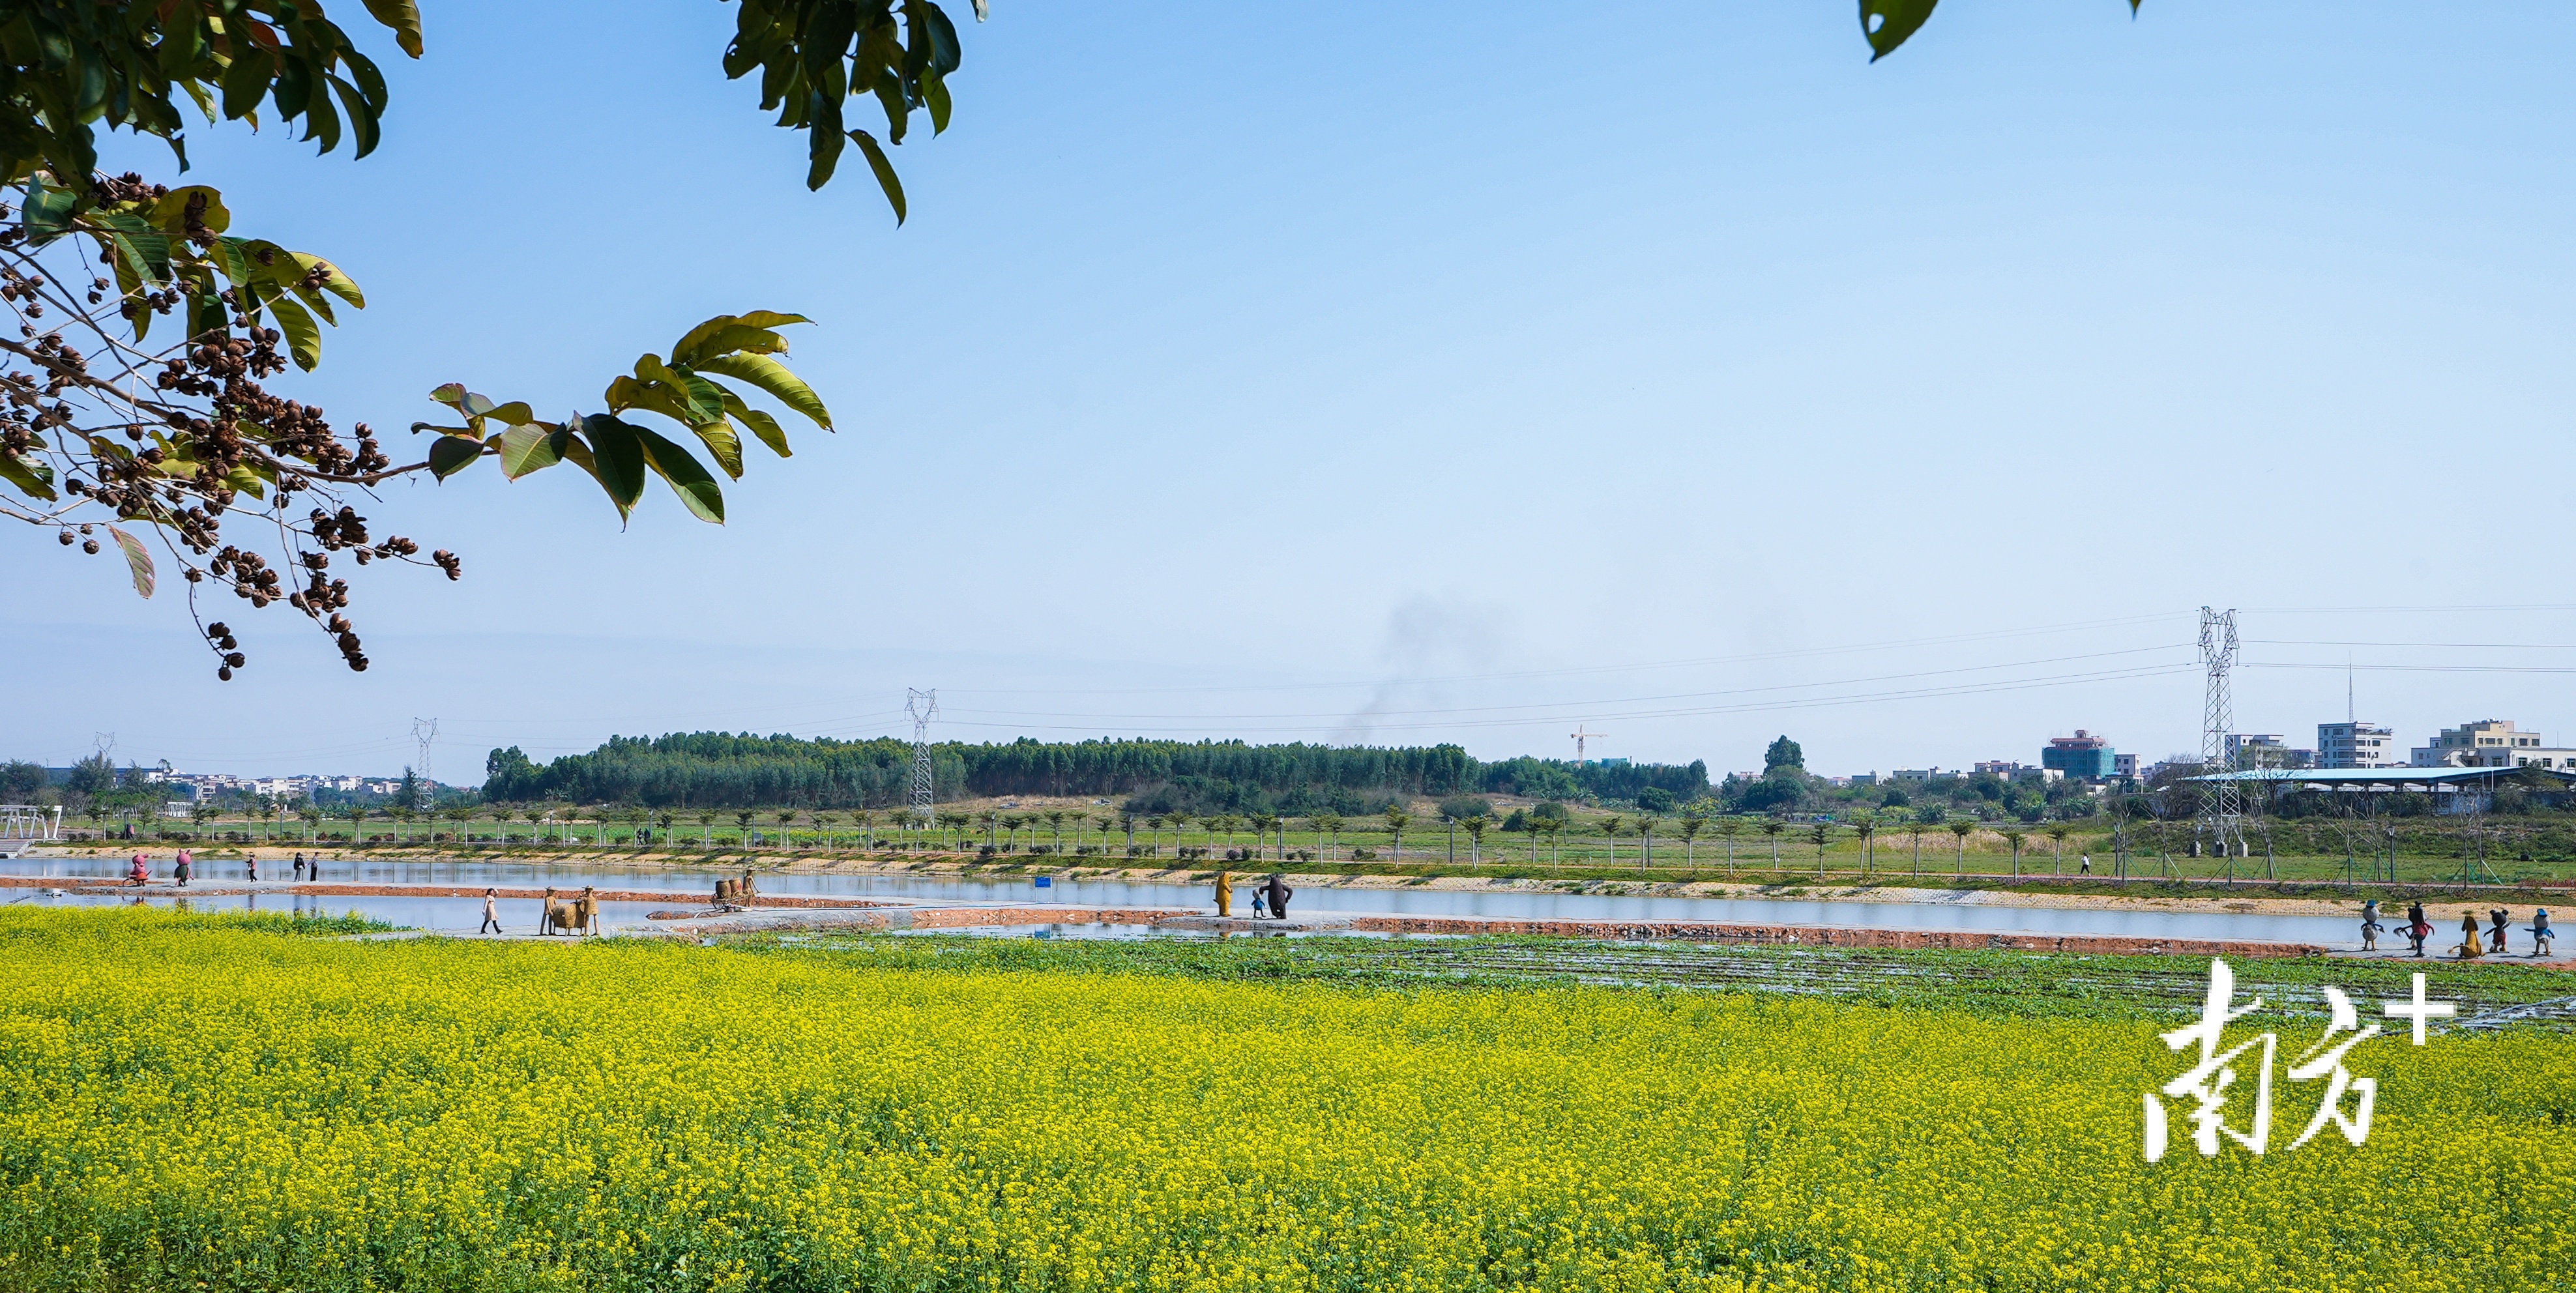  湛江市坡头区南调河畔油菜花恣意绽放。